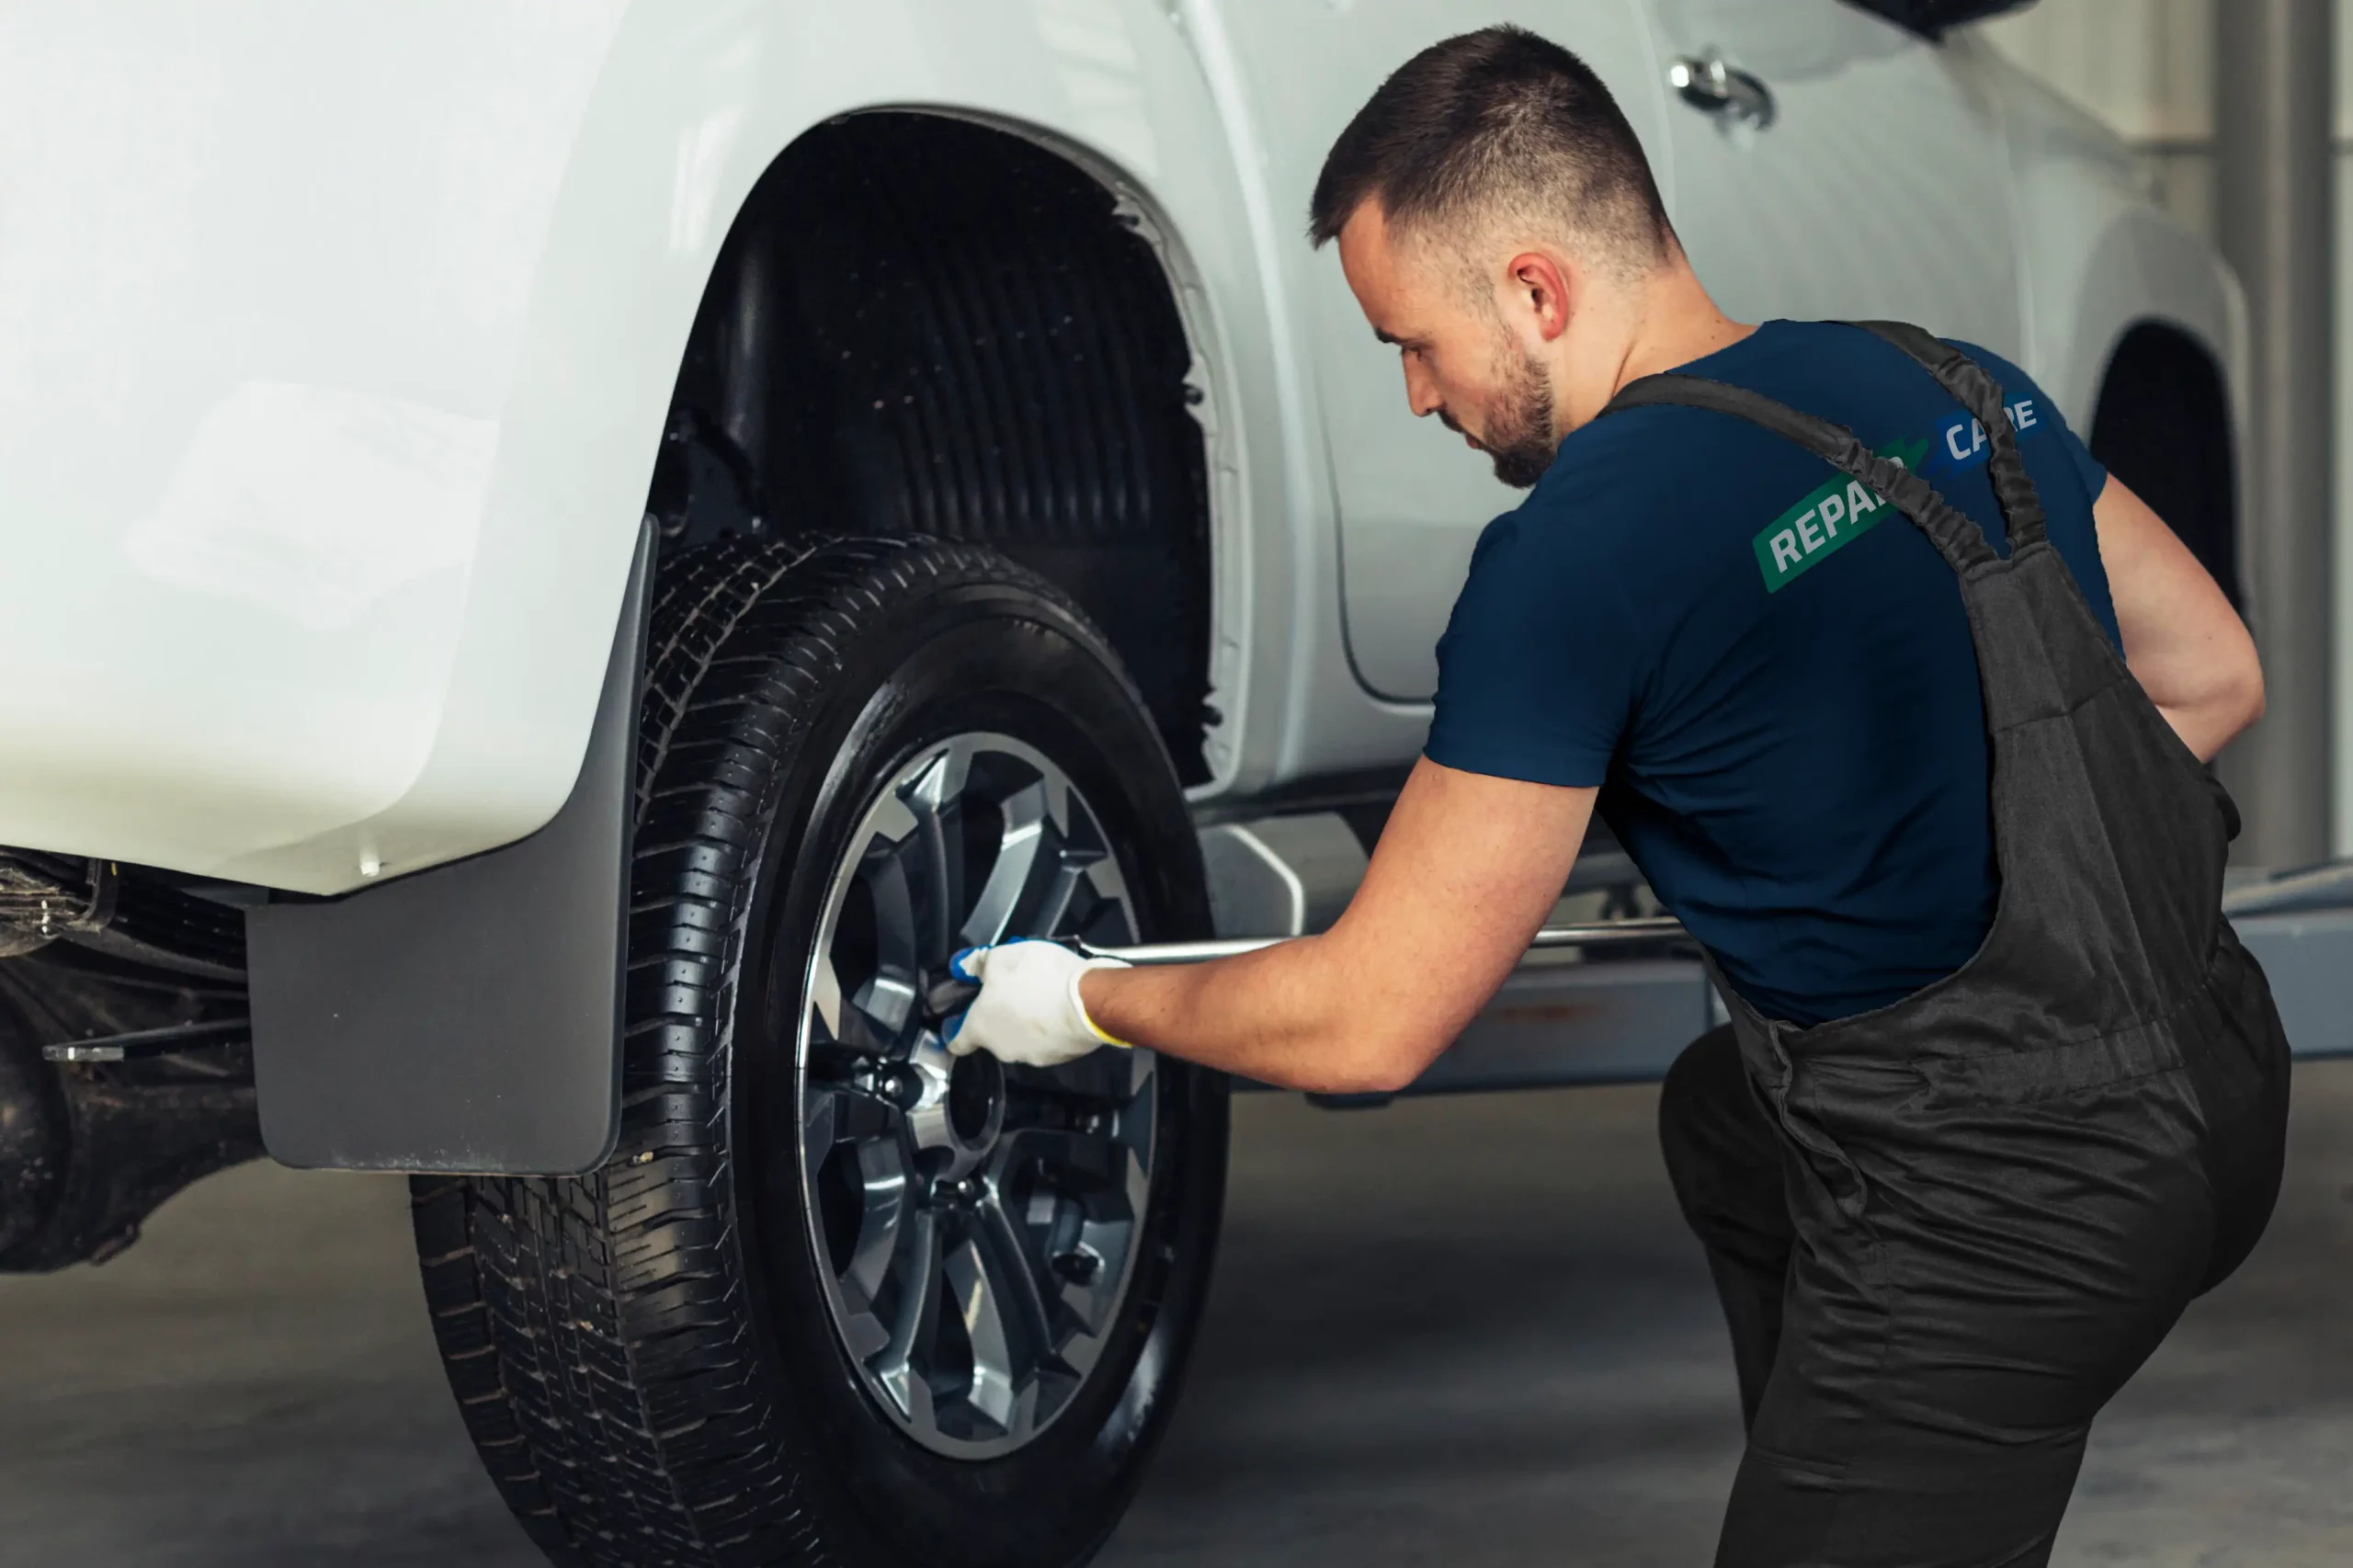 Tekniker fjerner dæk fra bil før fælgreparation.